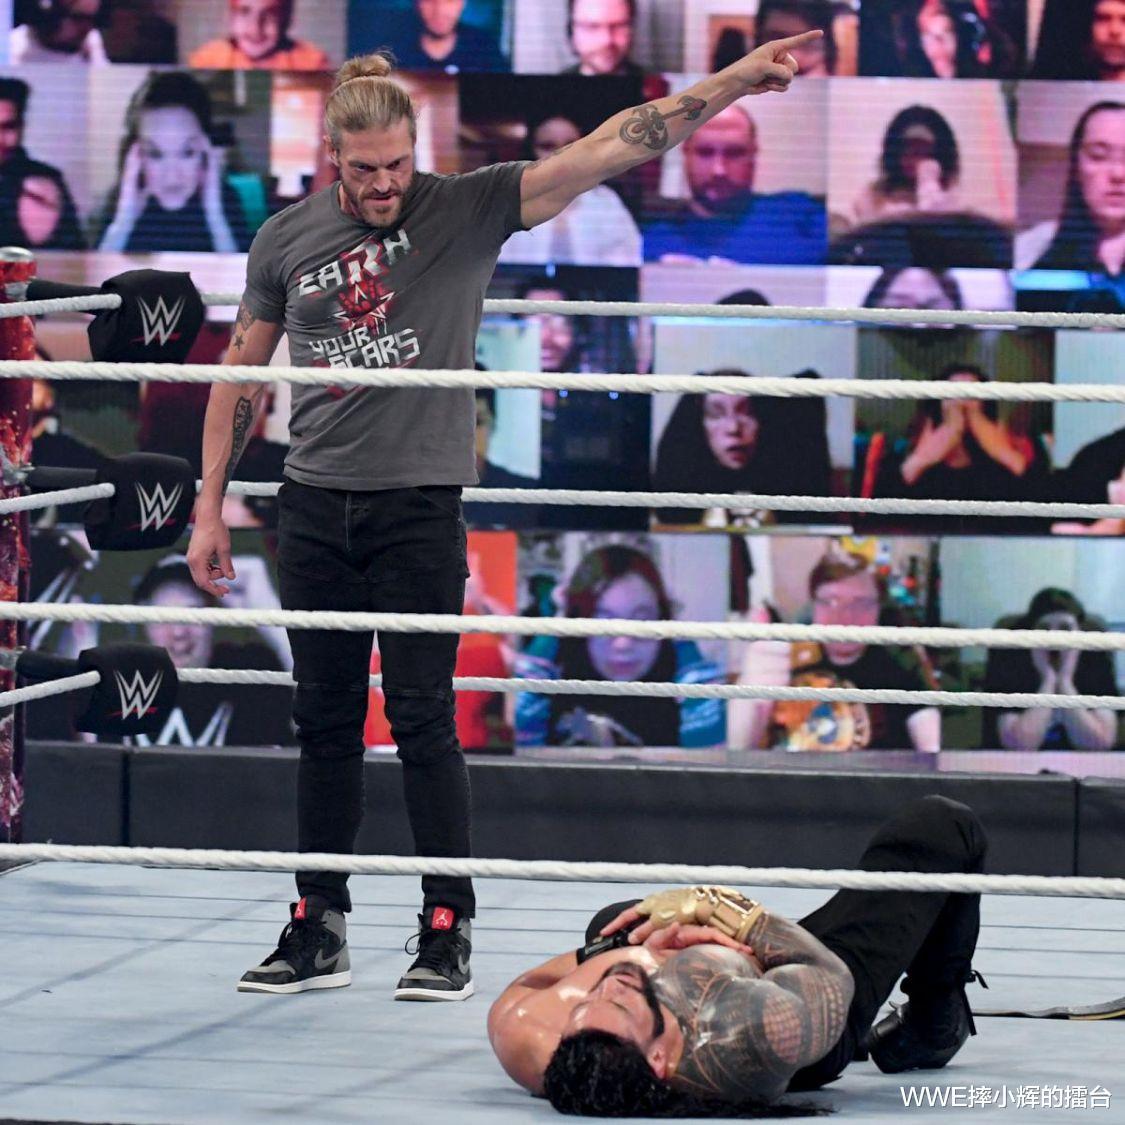 罗曼已成WWE中的唯一头牌巨星, 艾吉将输掉摔角狂热冠军比赛?(2)